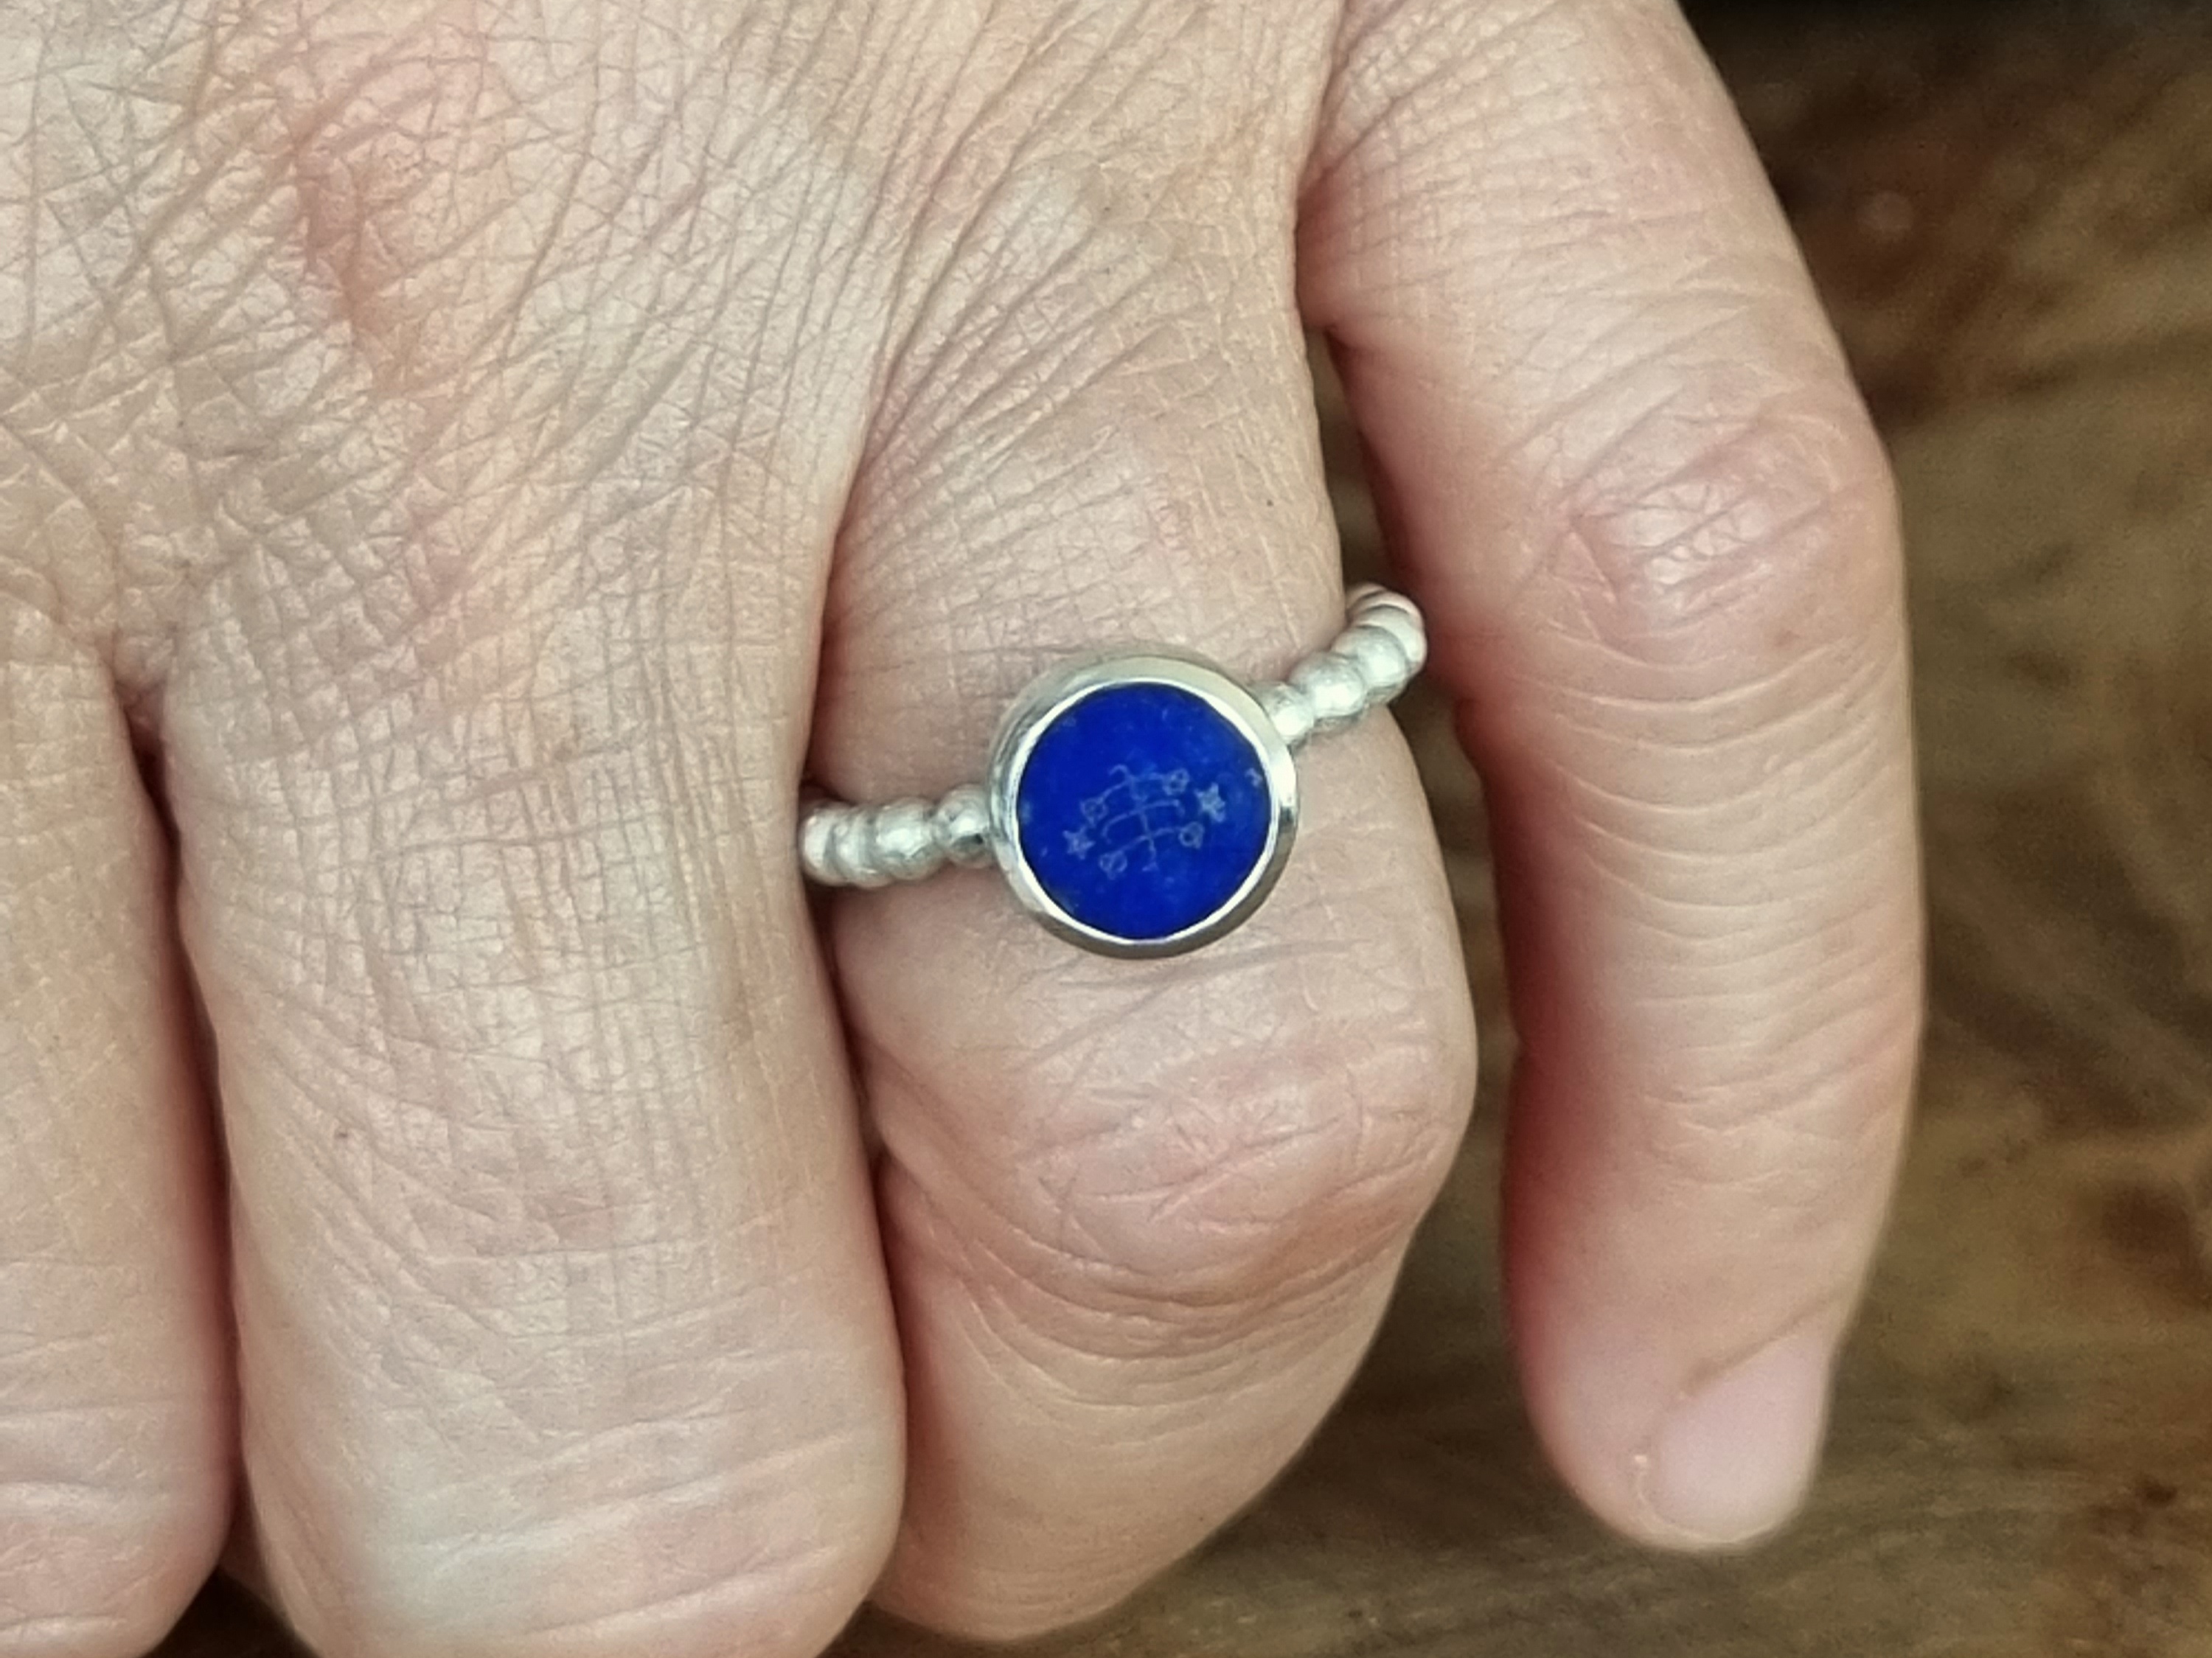 Silberperlen Ring mit Bahá'í Symbol auf Lapis Lazuli Stein 